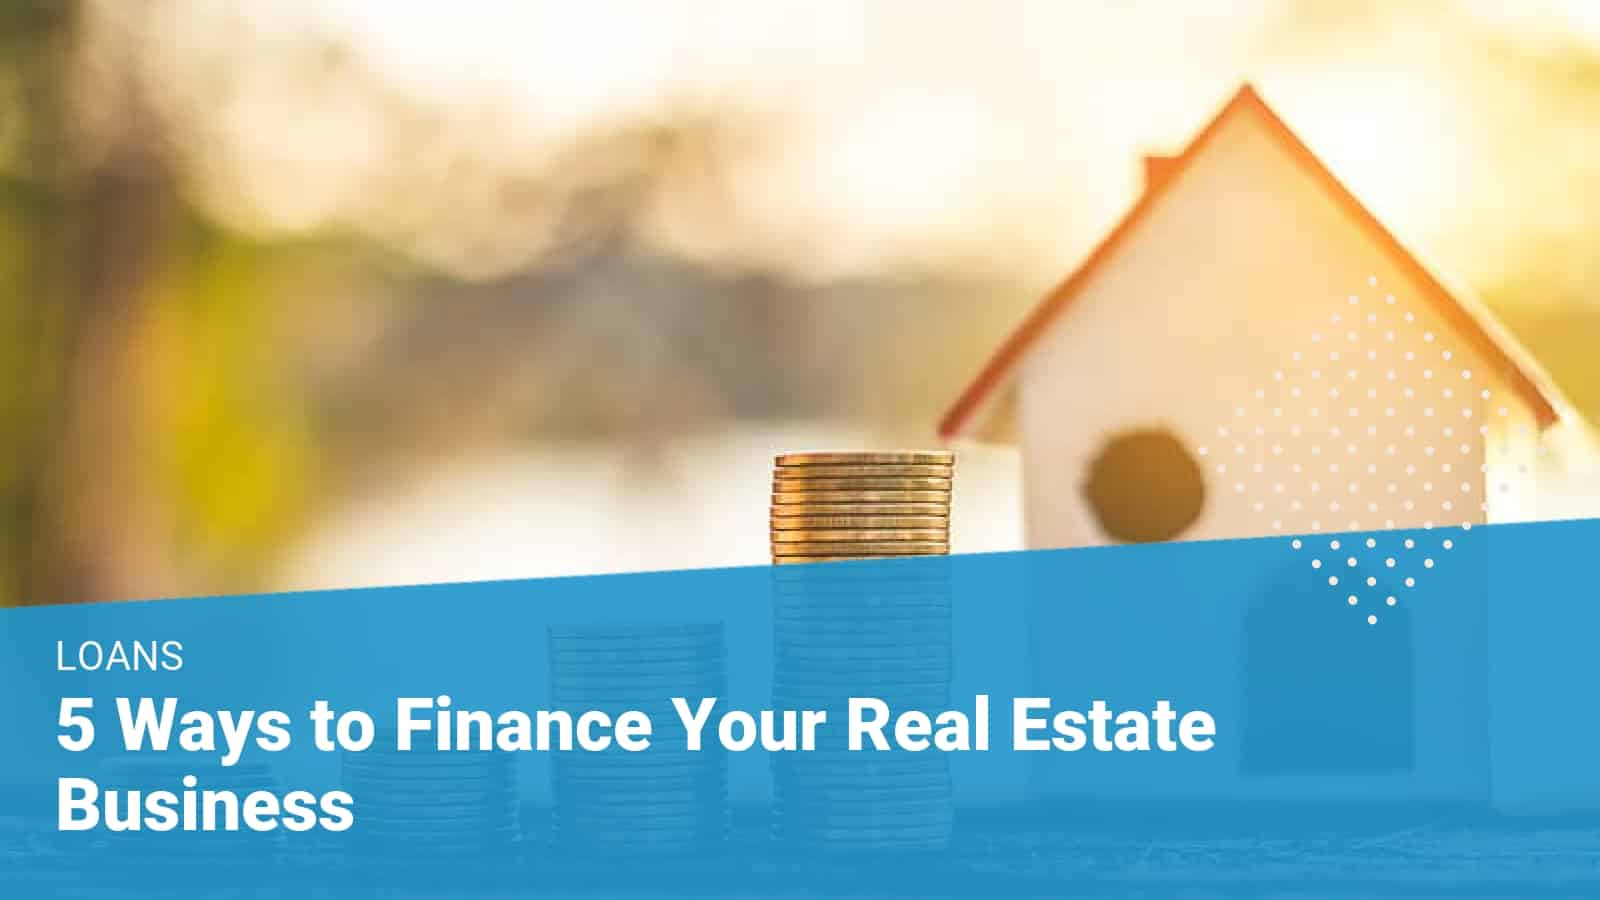 Real Estate Finance